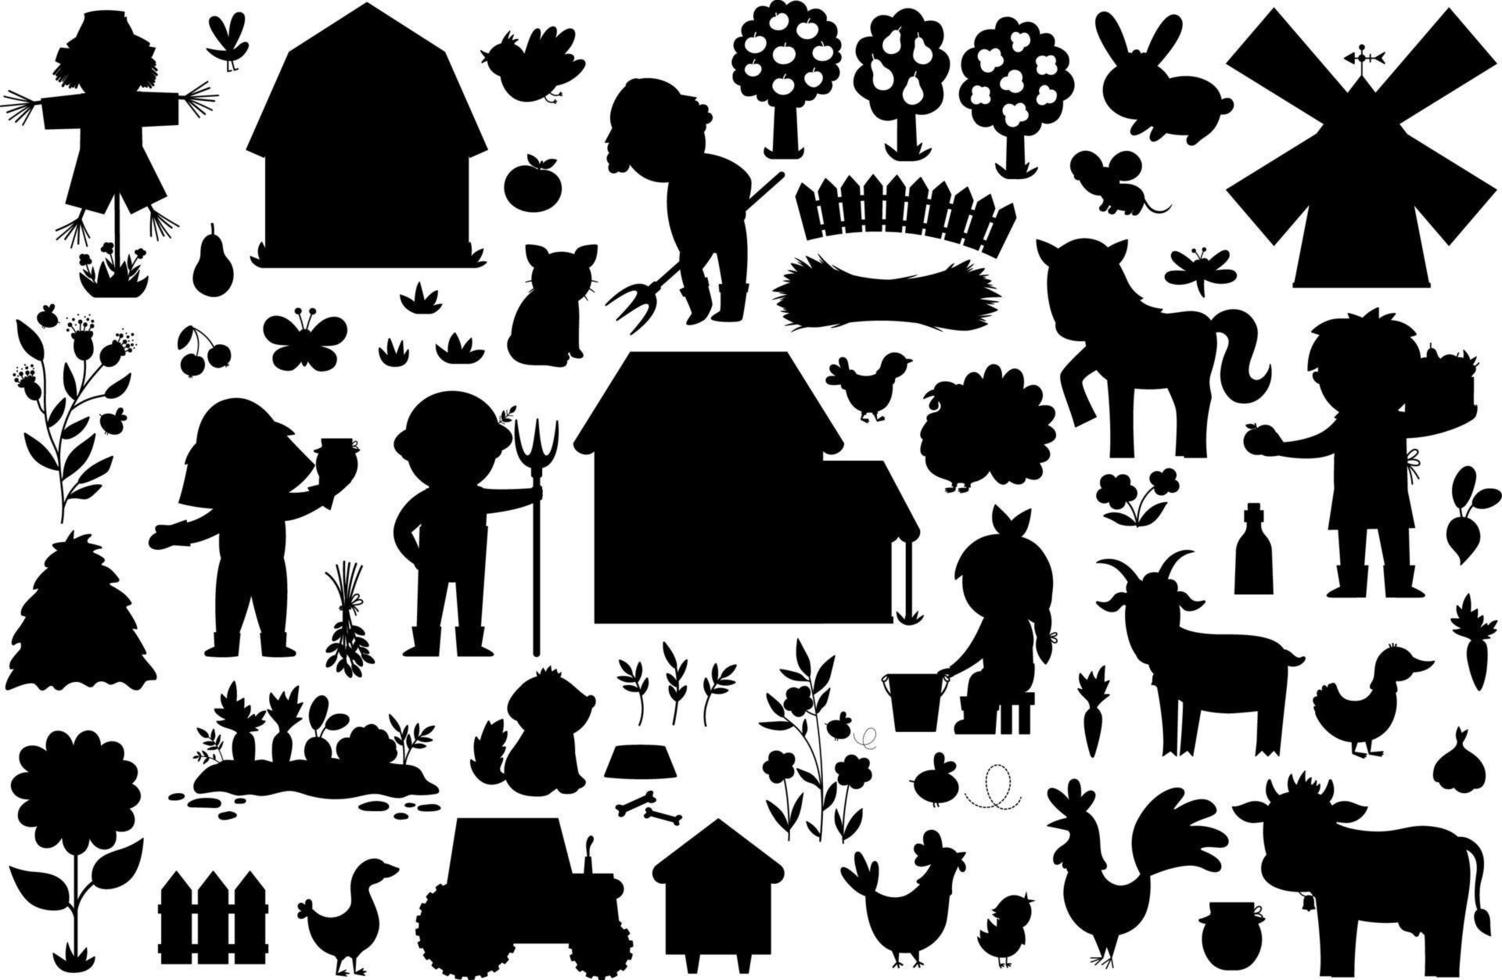 vektor bruka silhuetter uppsättning. lantlig svart ikoner samling med rolig unge bönder, ladugård, Land hus, djur, fåglar, traktor, väderkvarn, hö, bikupa. söt by eller trädgård skugga illustrationer